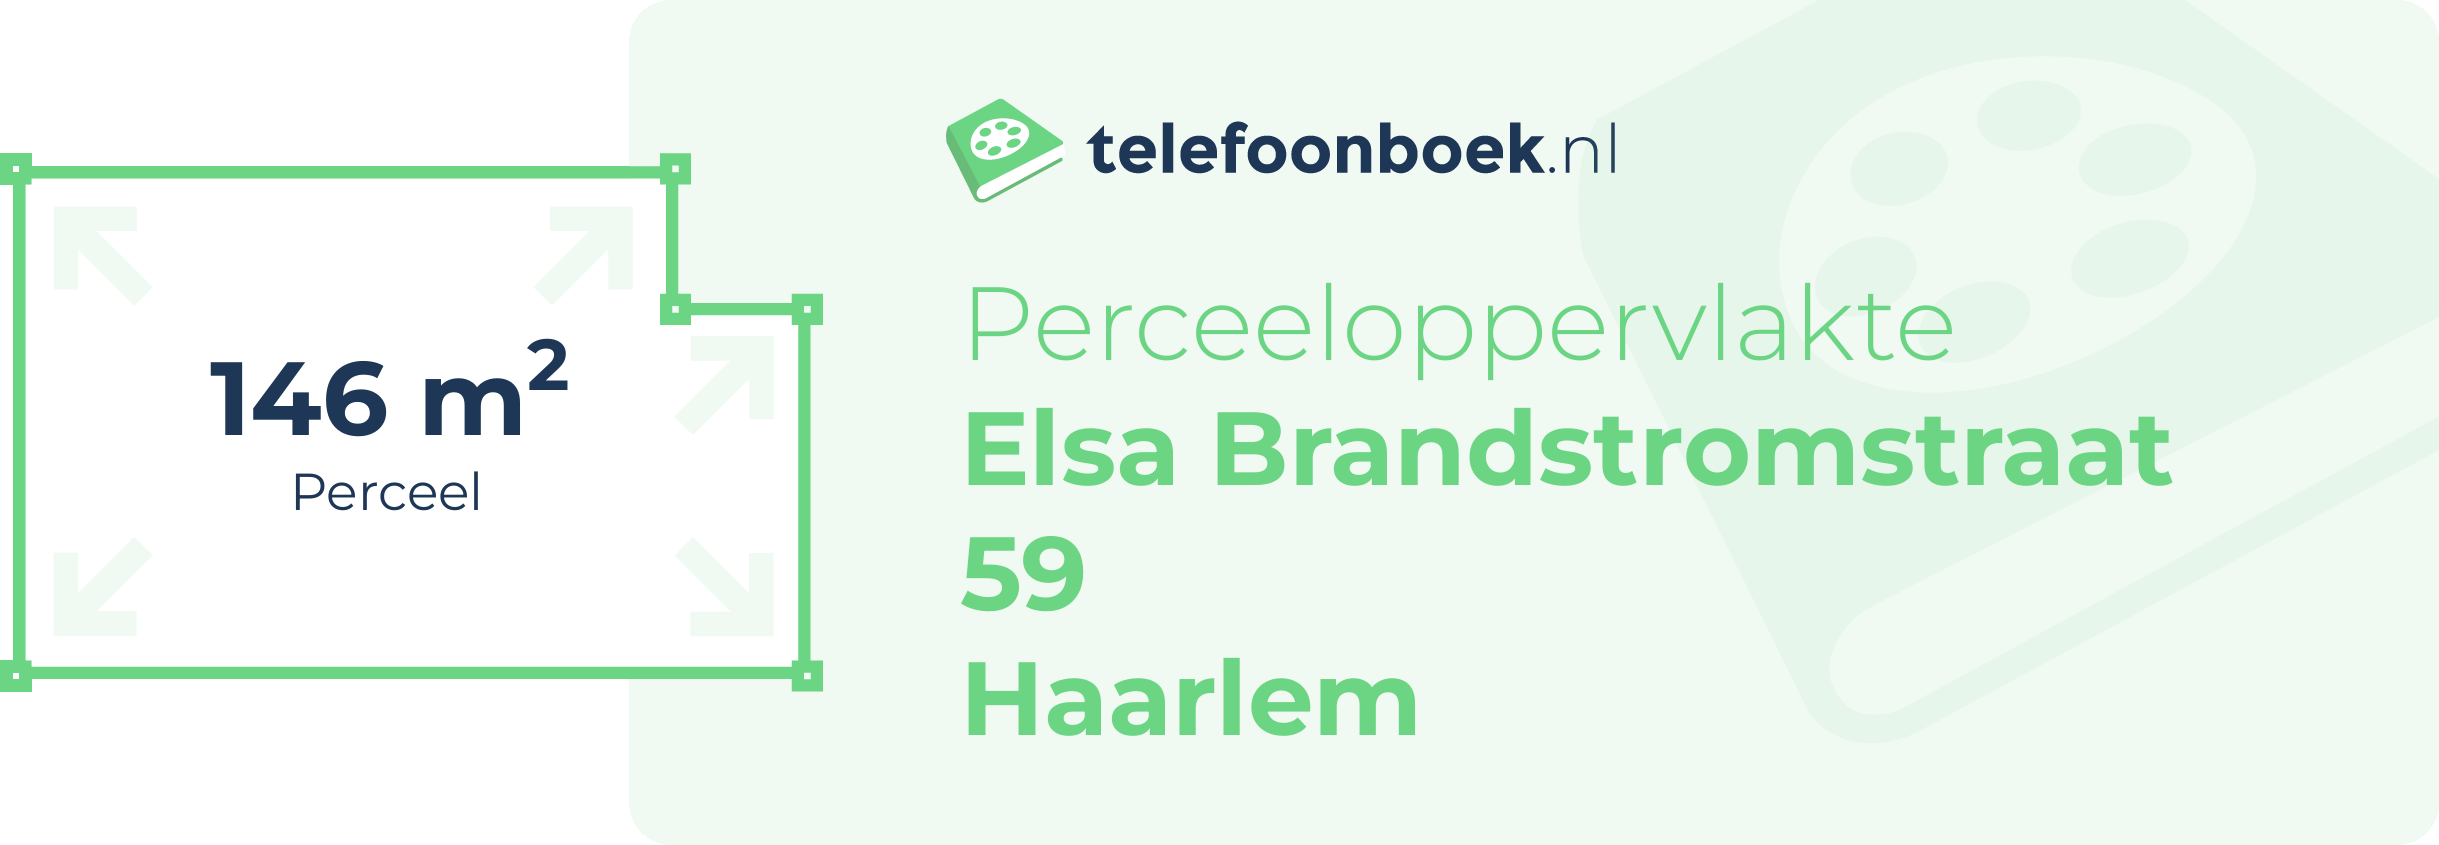 Perceeloppervlakte Elsa Brandstromstraat 59 Haarlem